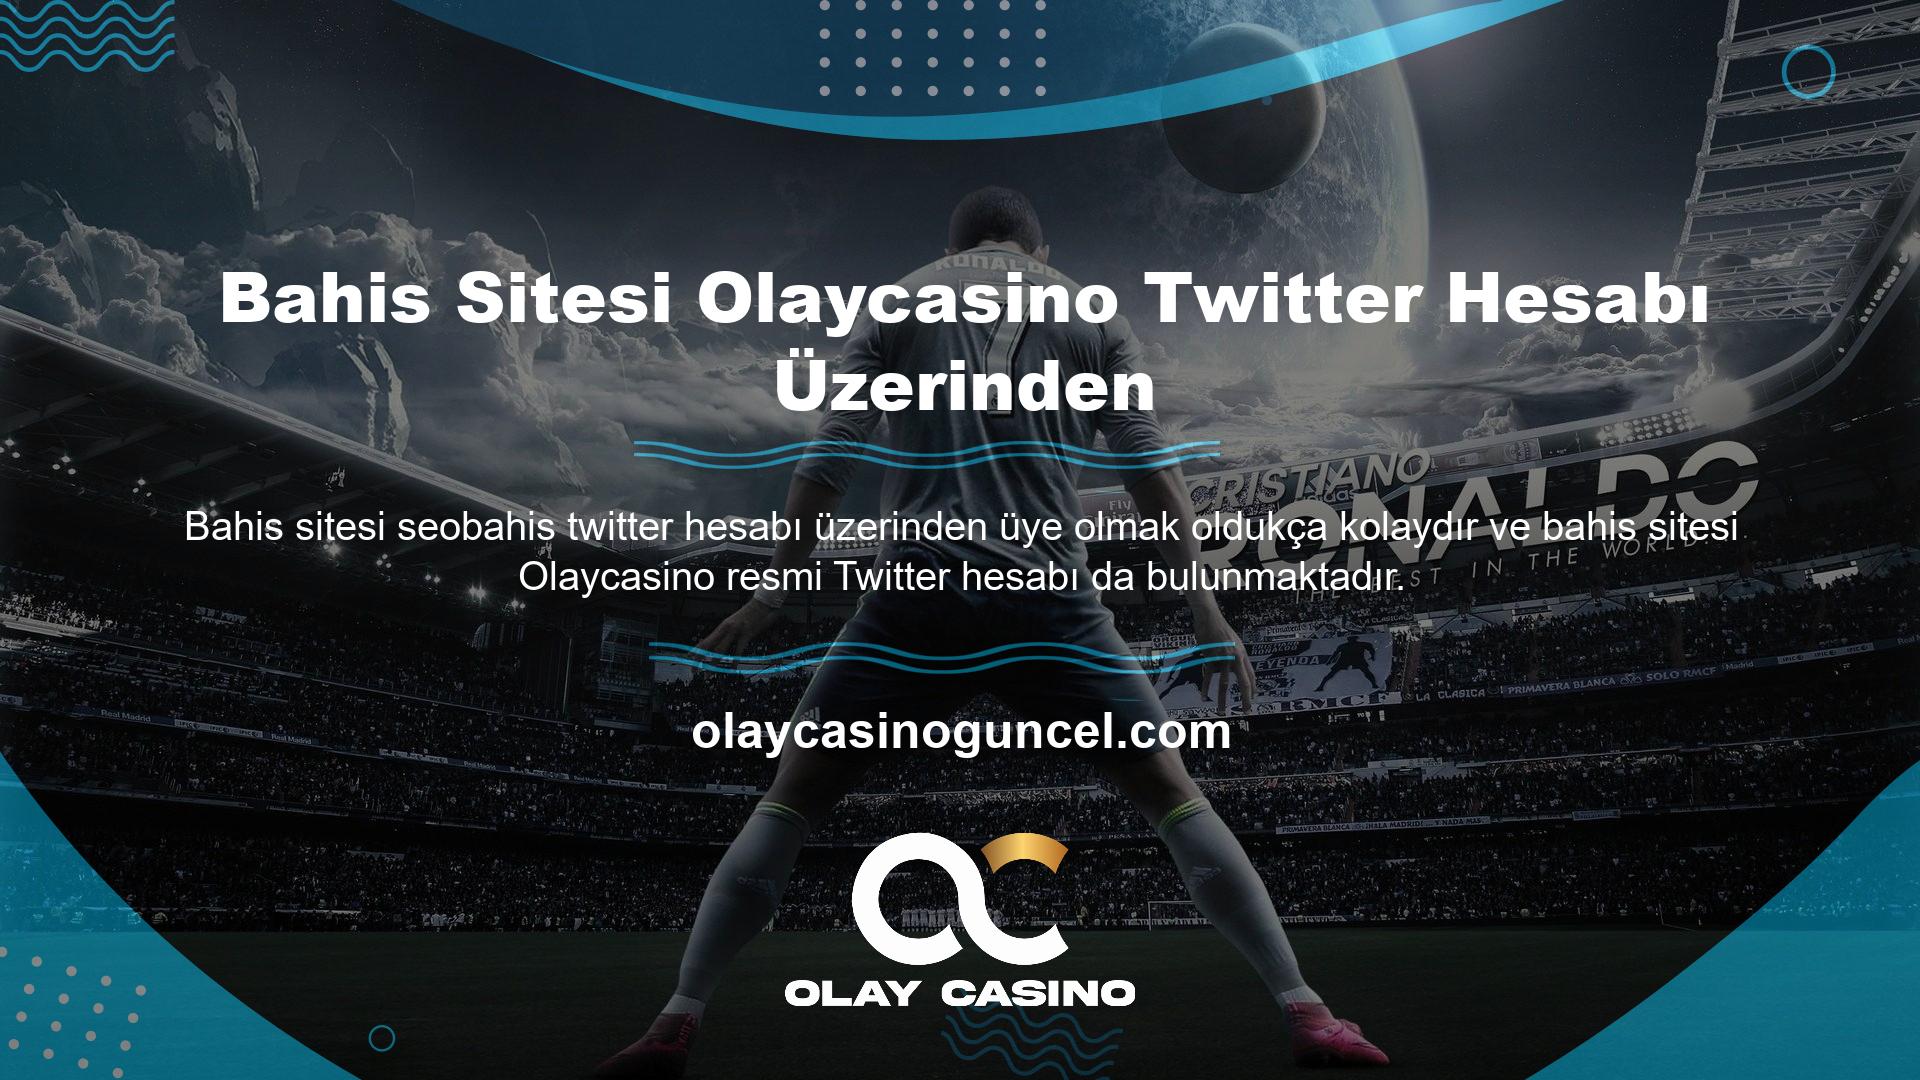 Casino ve bahis dünyasına ilgi duyanlar Olaycasino Casino Haberlerini Twitter üzerinden de takip edebilirler